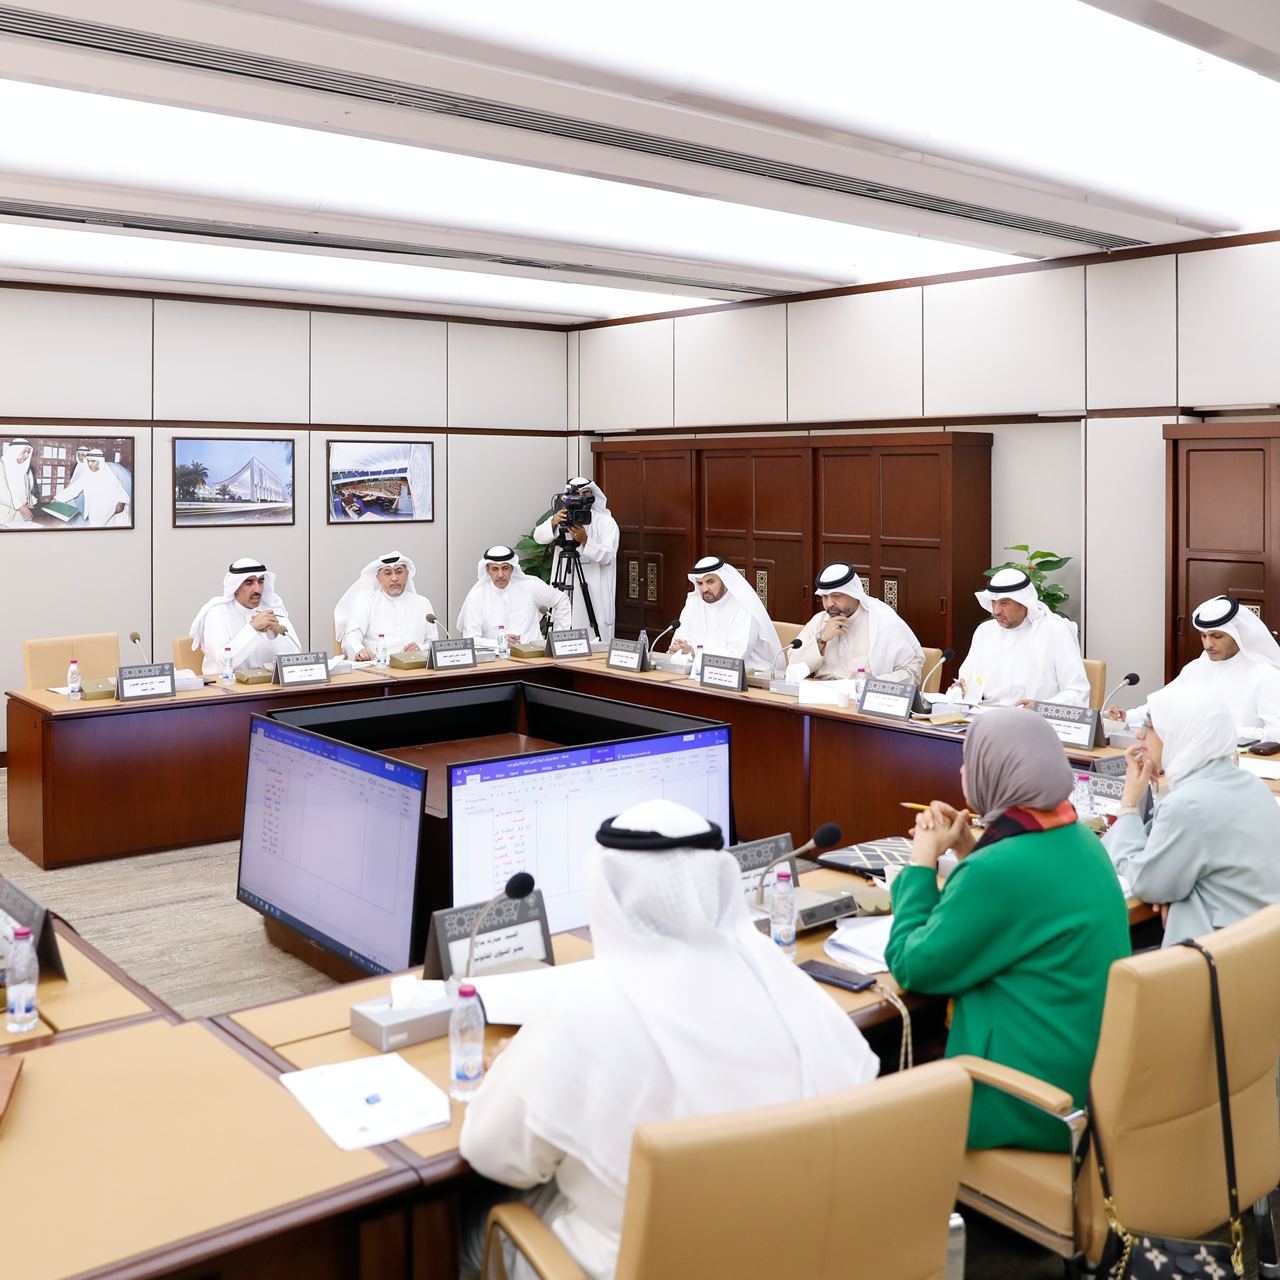 رئيس لجنة شؤون ذوي الإعاقة سعود العصفور: توافق مع الحكومة بشأن معظم التعديلات النيابية على قانون ذوي الإعاقة  